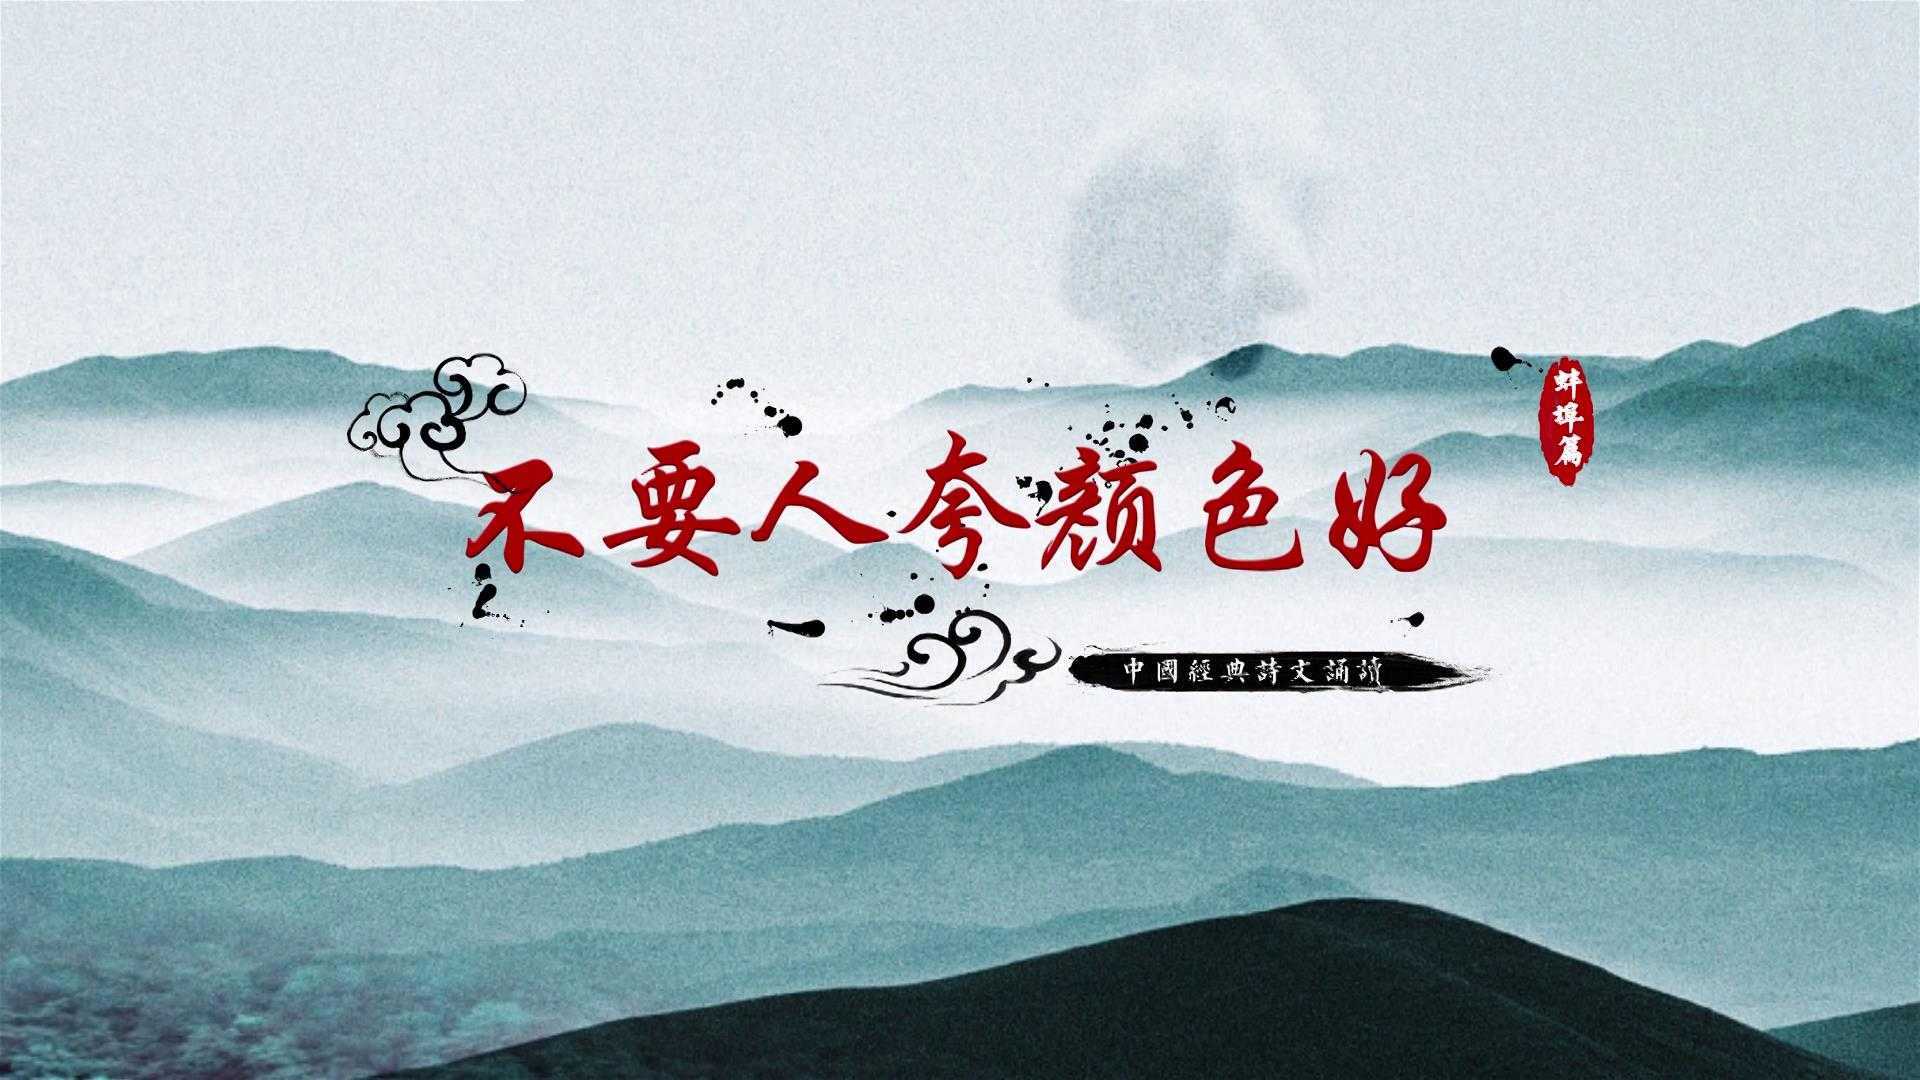 蚌埠人民银行微视频《梅花颂》